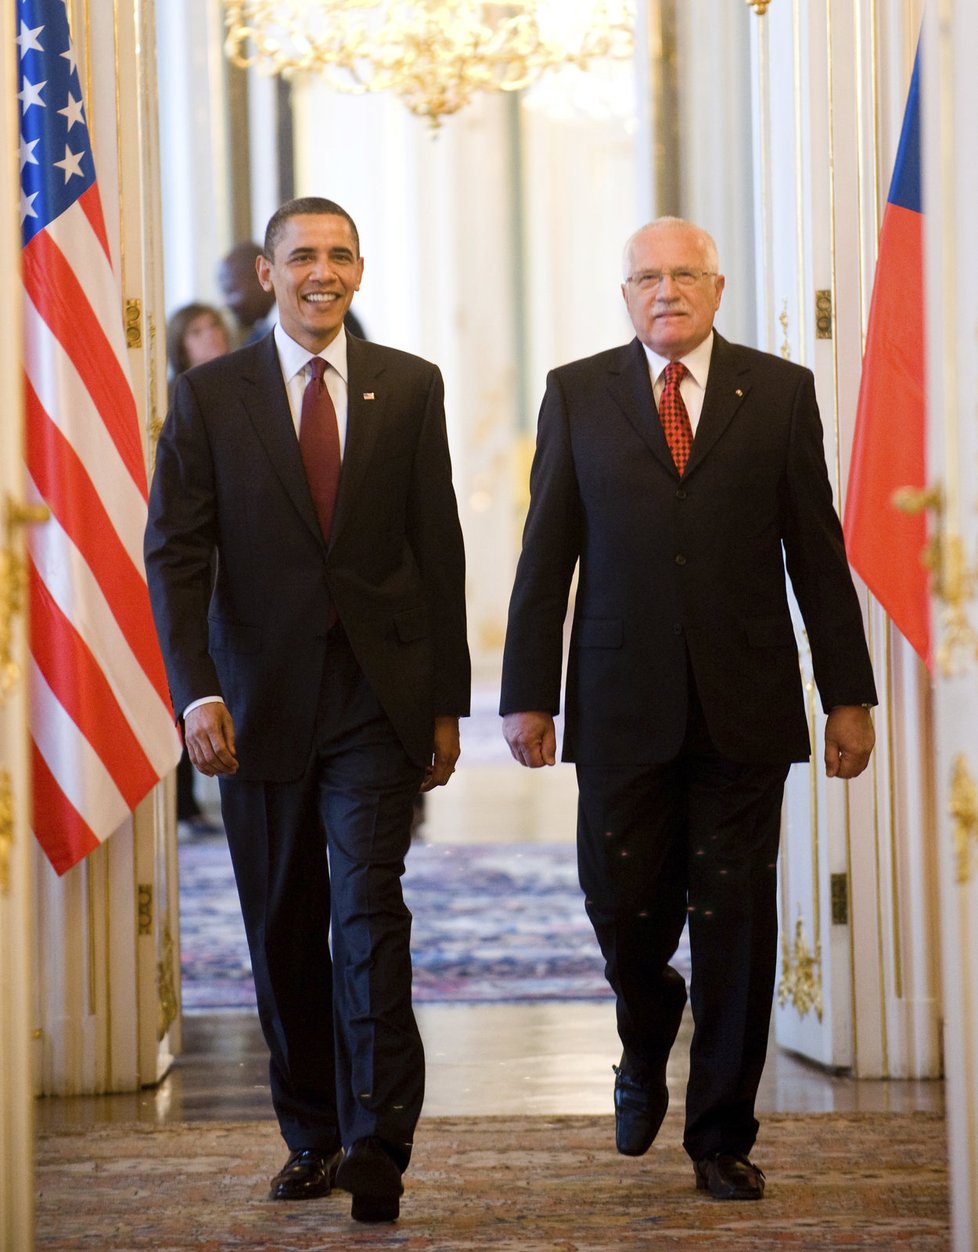 Barack Obama při své druhé návštěvě Prahy jednal v roce 2010 s Dmitrijem Medveděvem. Oba prezidenty přivítal Václav Klaus.